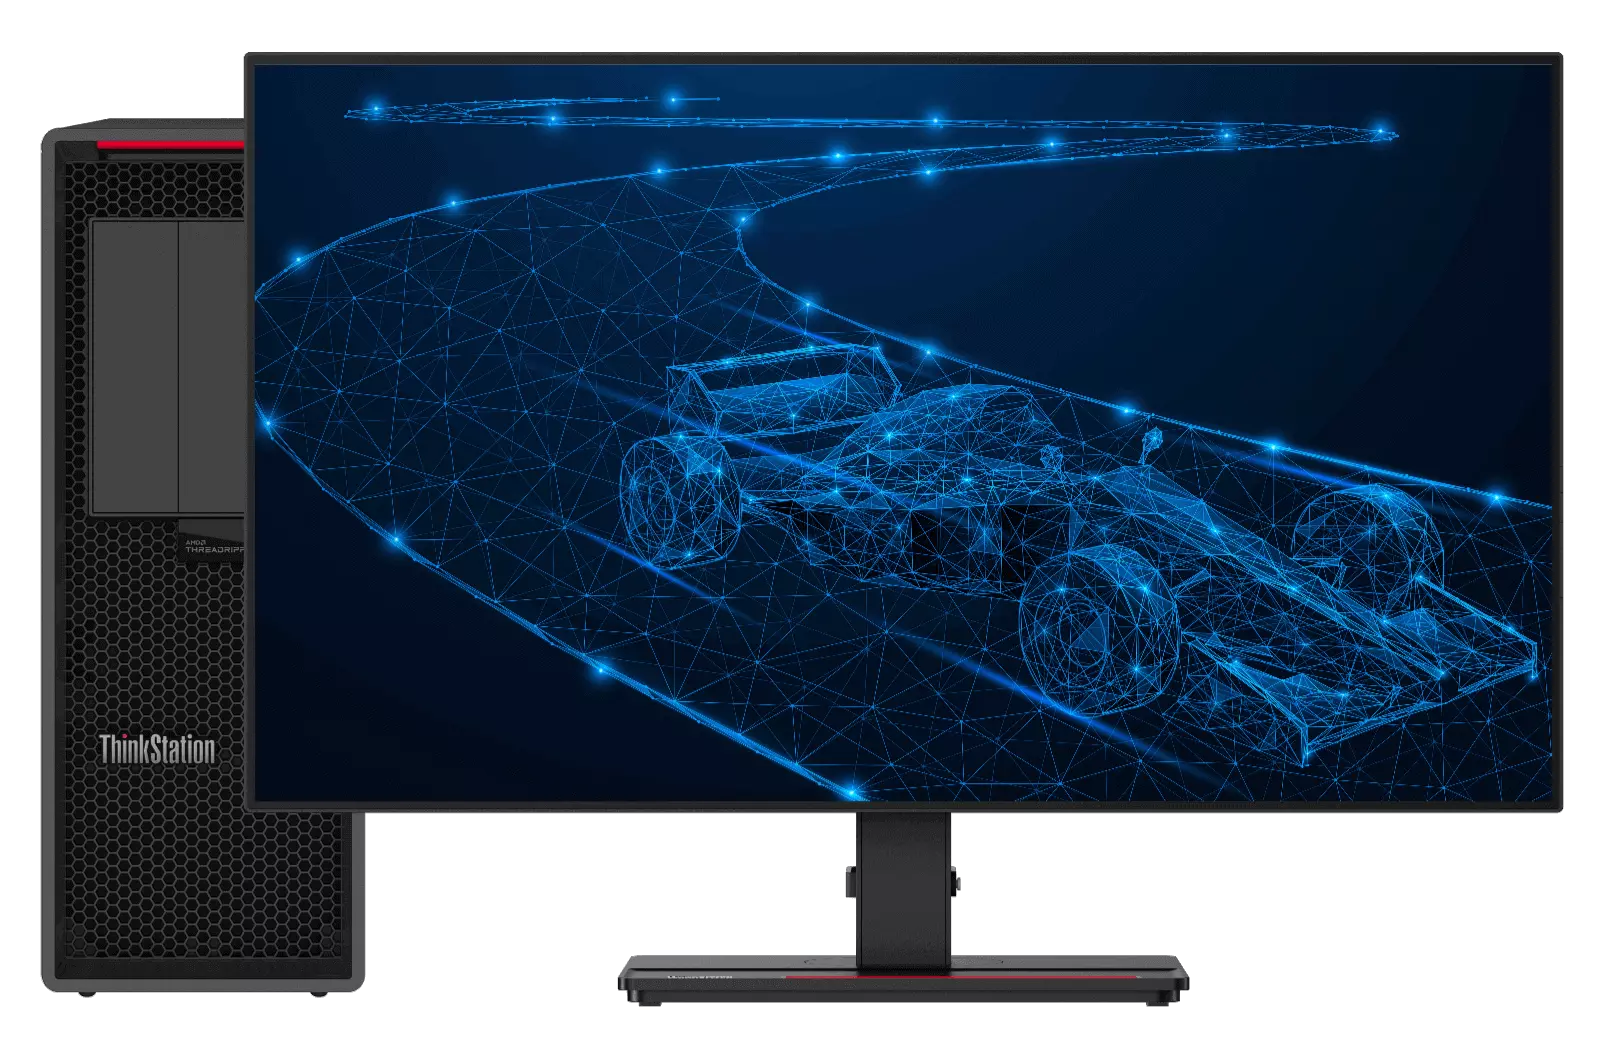 Lenovo ThinkStation s plány vozu F1 na závodní dráze na obrazovce.